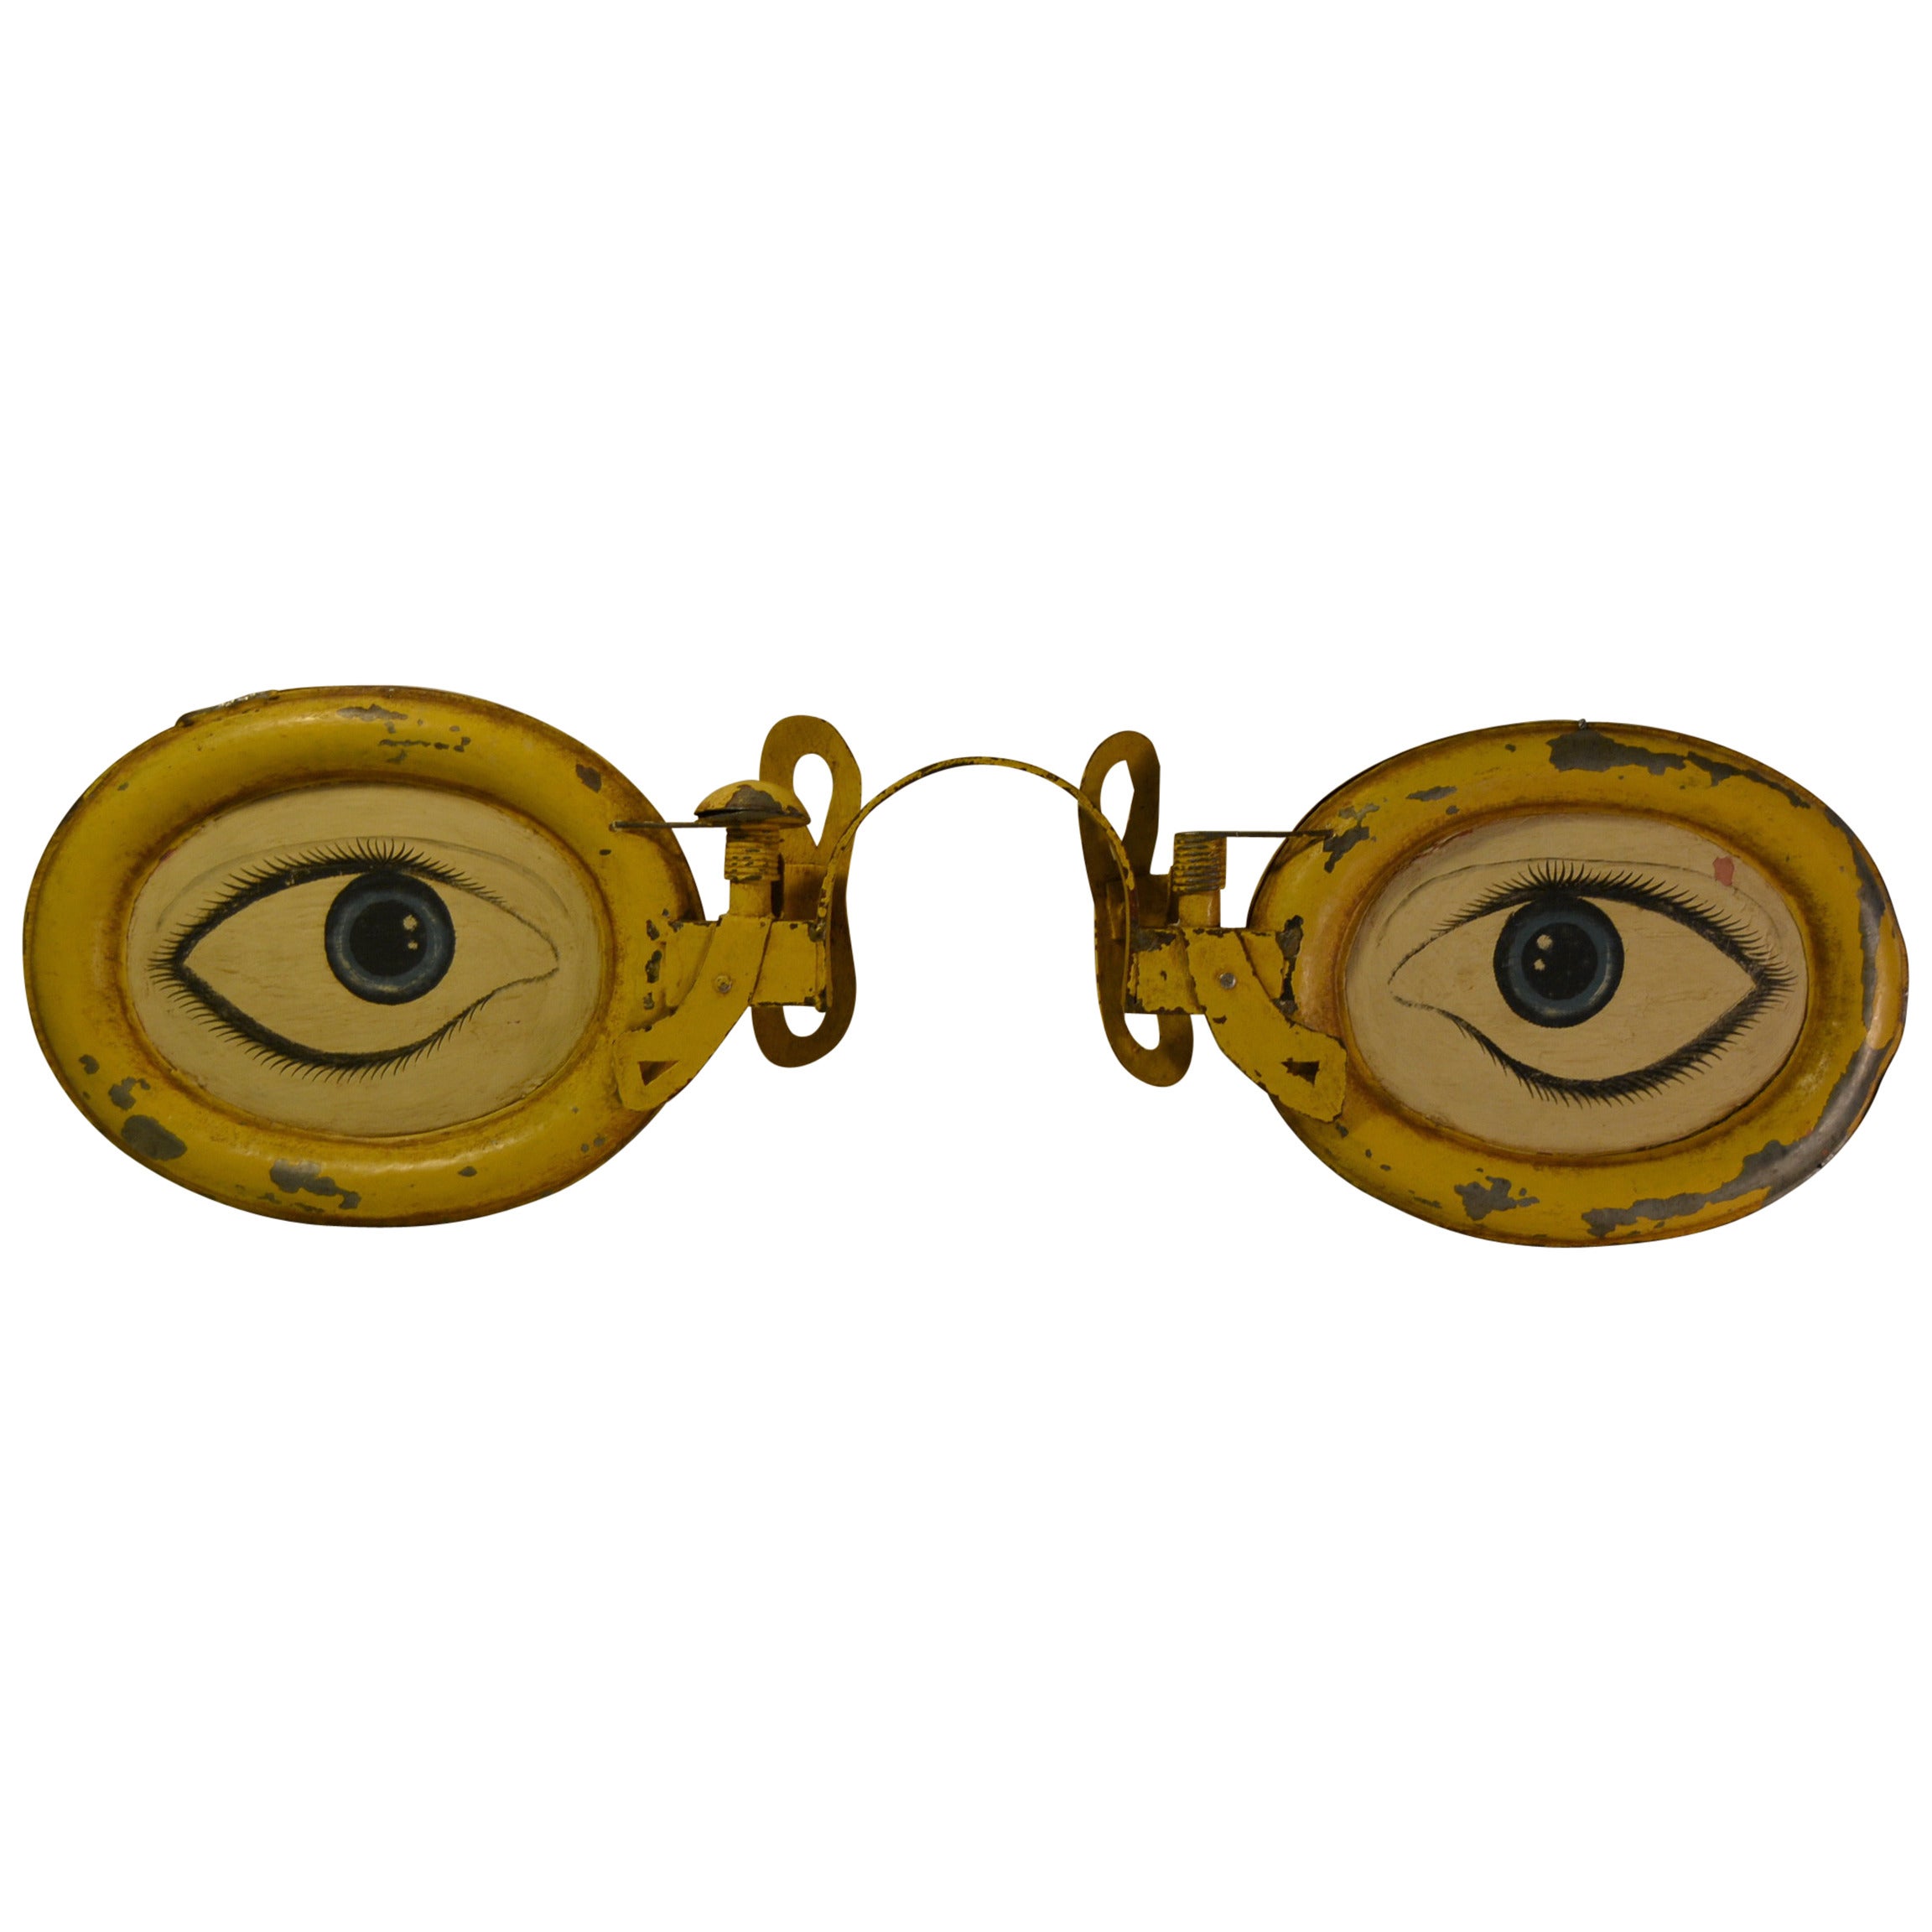 Rare Antique Optometrist Trade Sign